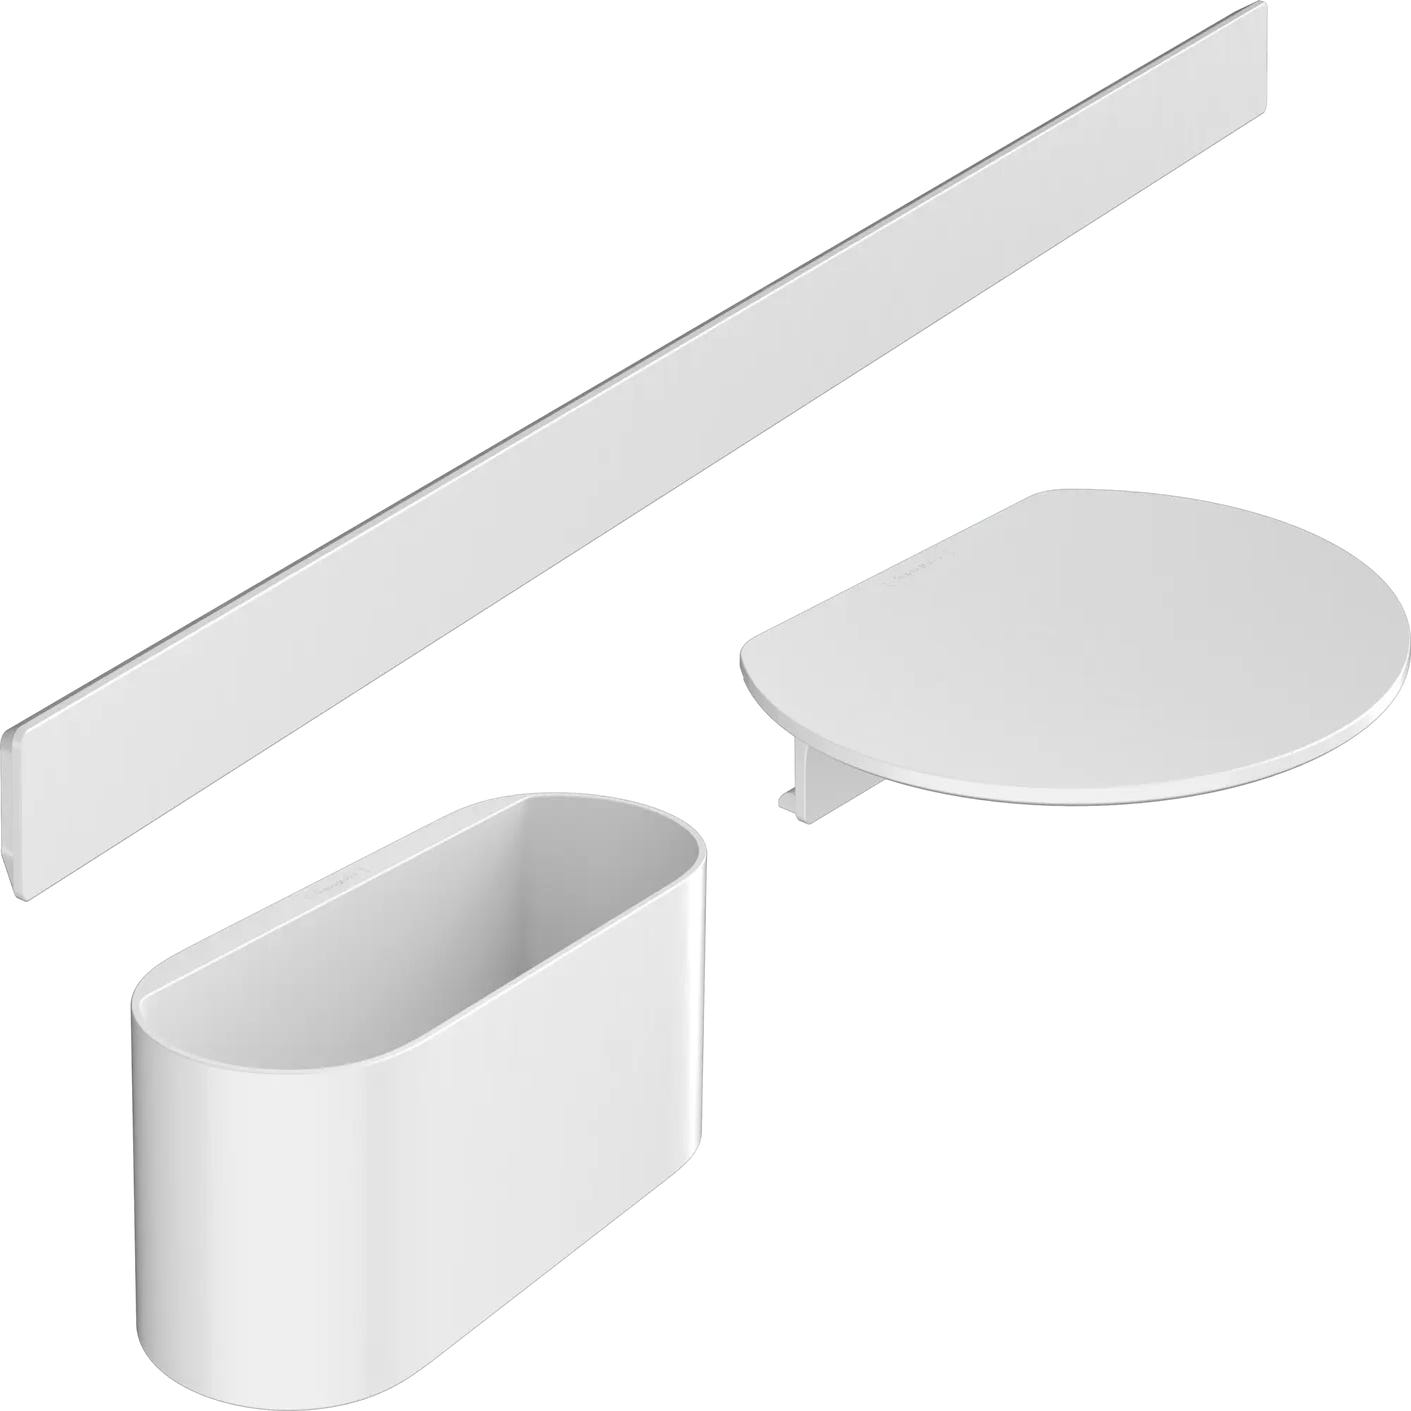 Set accesorios baño Wallstoris Blanco